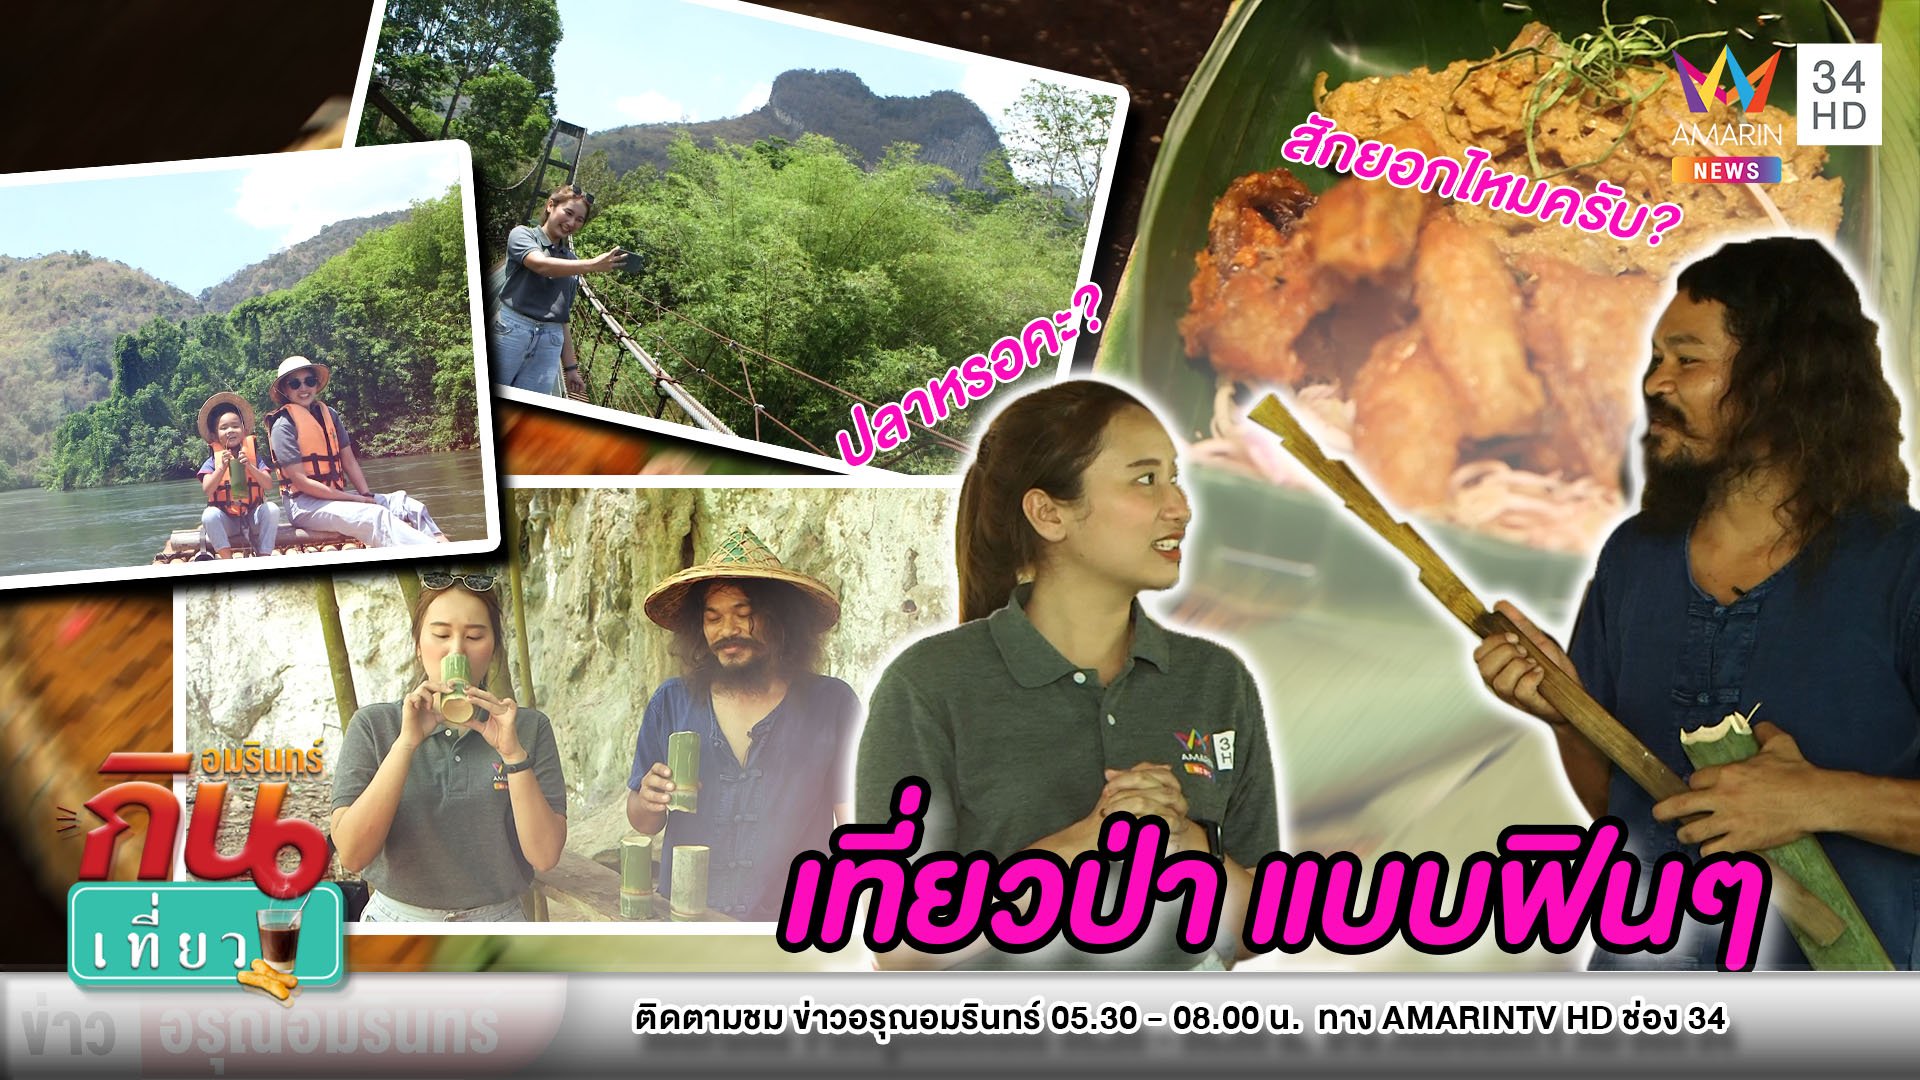 ฟินๆ พาเที่ยววิถีชุมชน ชมธรรมชาติสไตล์ “Bamboo jungle” | ข่าวอรุณอมรินทร์ สุดสัปดาห์ | 29 มี.ค. 63 | AMARIN TVHD34